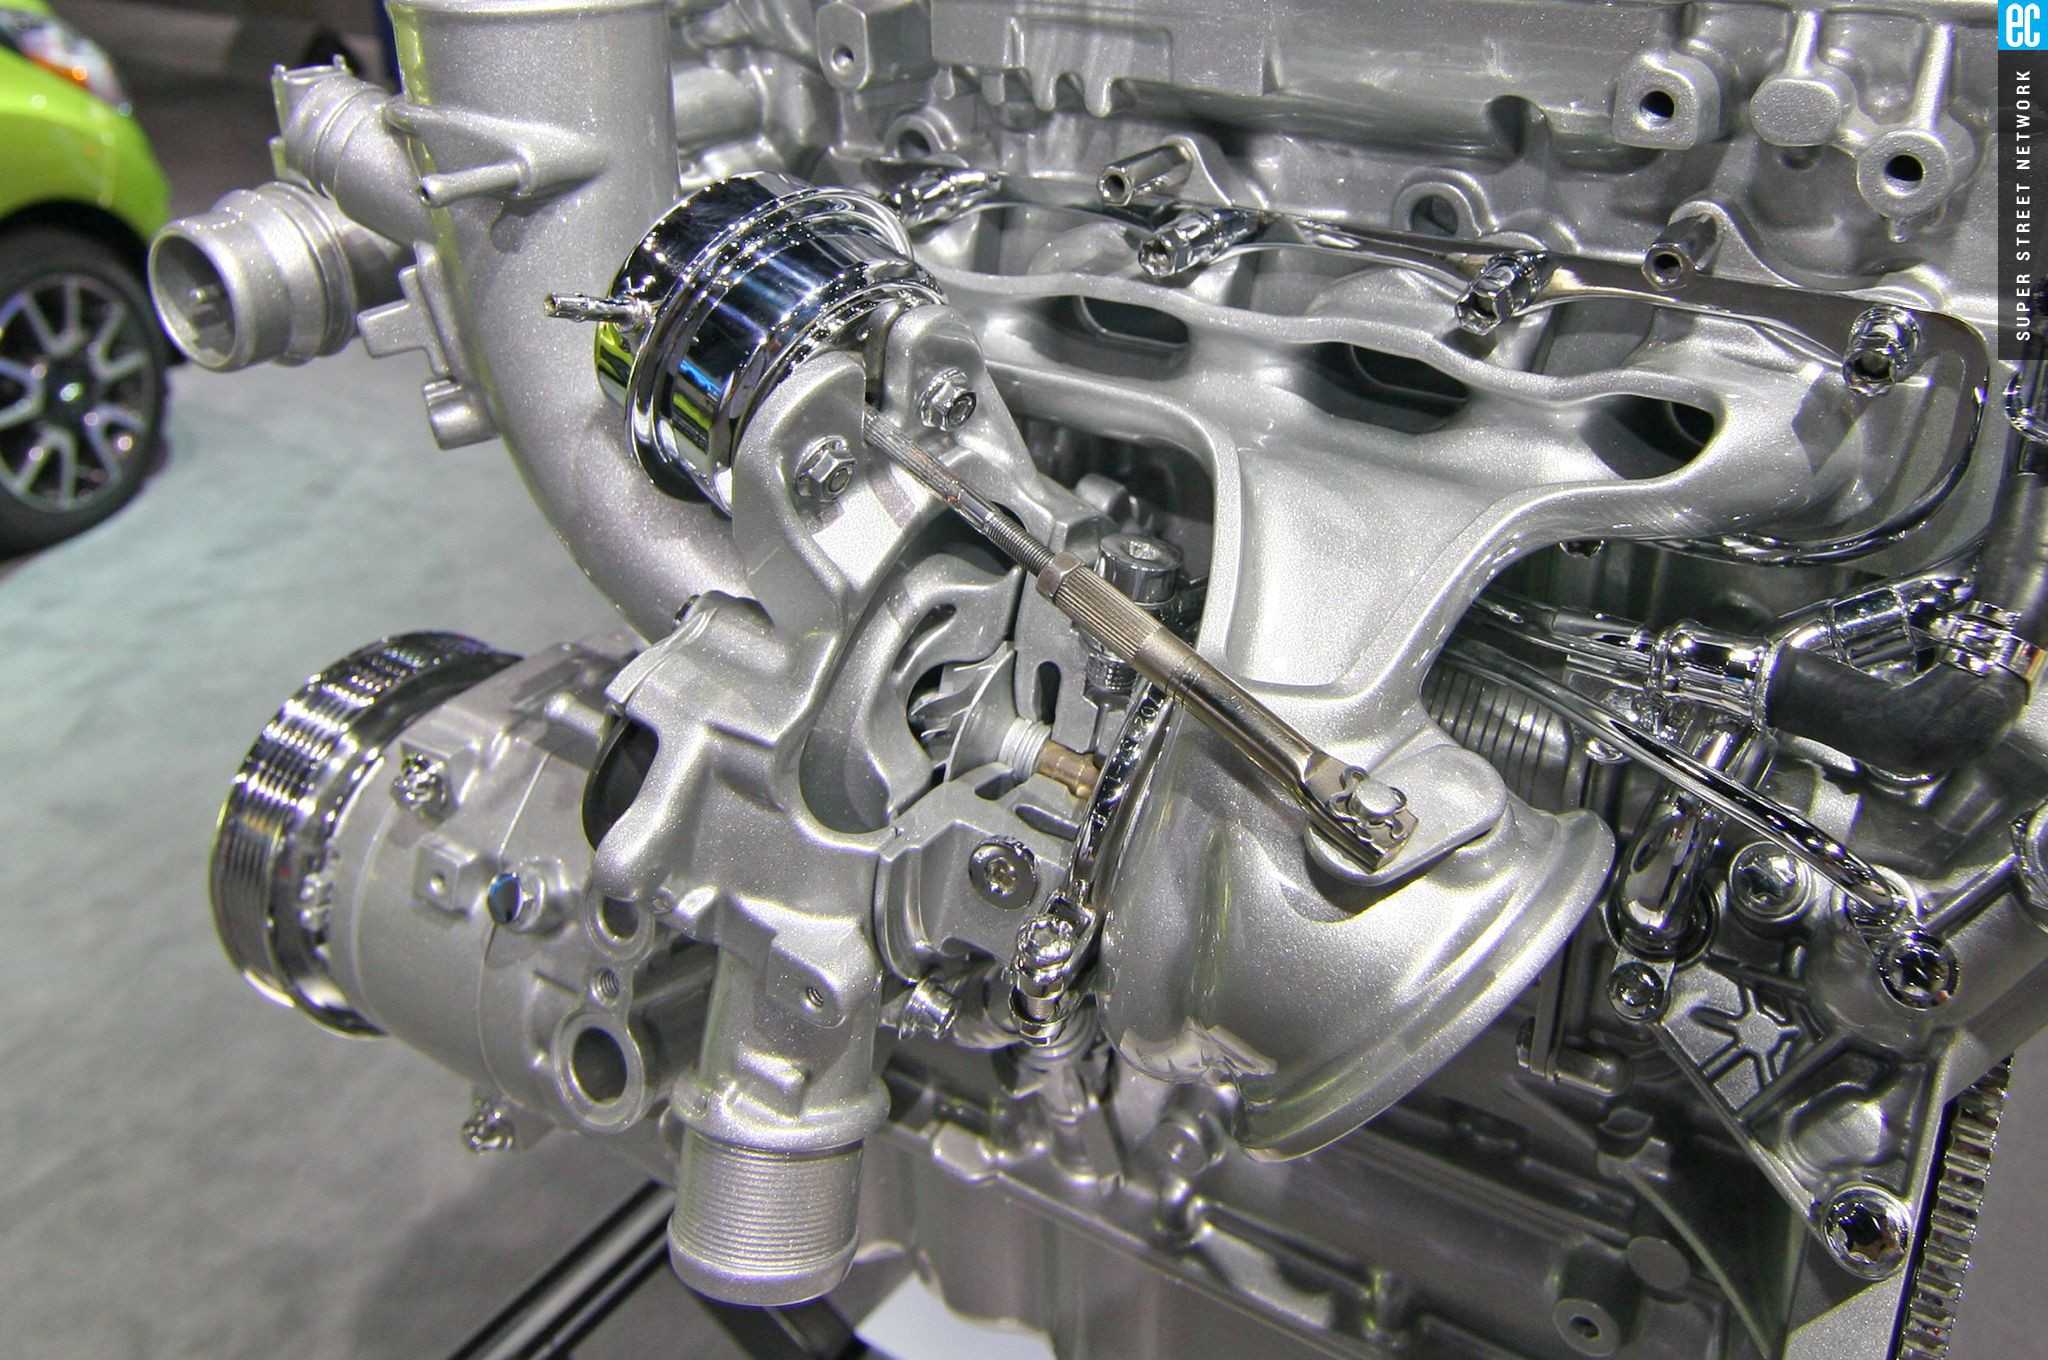 Атмосферный двигатель. выберем что лучше — атмосферный двигатель или турбированный